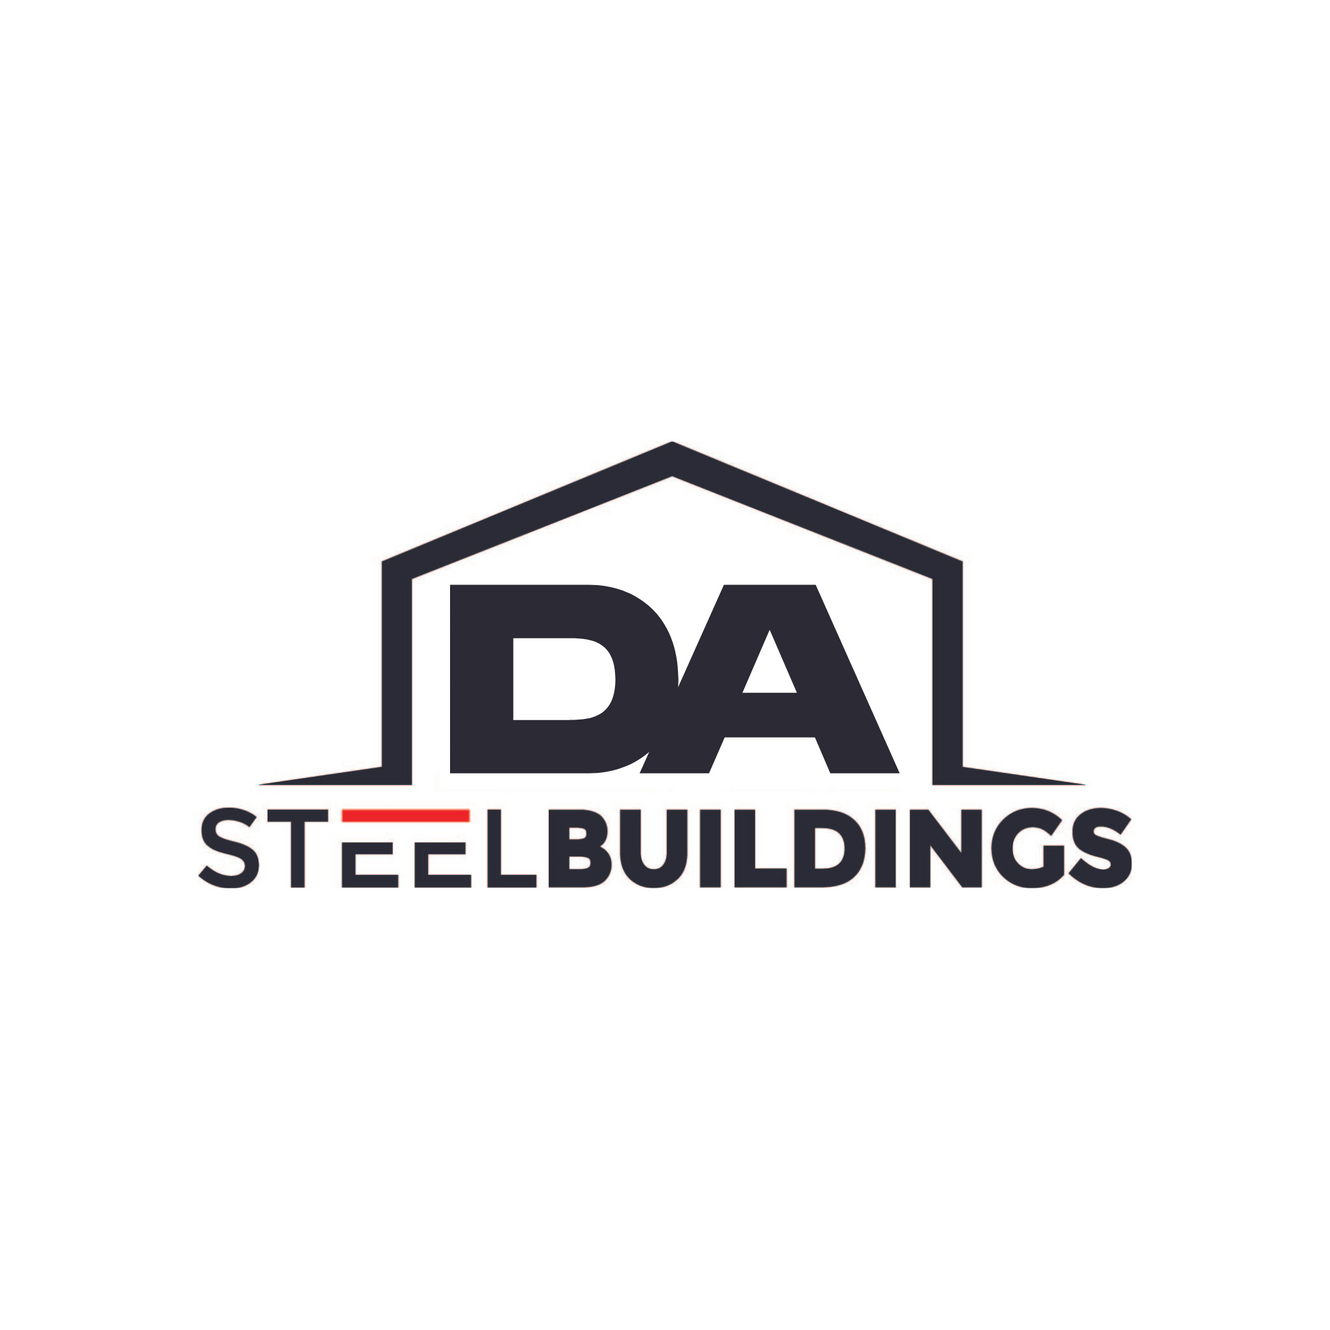 Oil & Gas | DA Steel Buildings